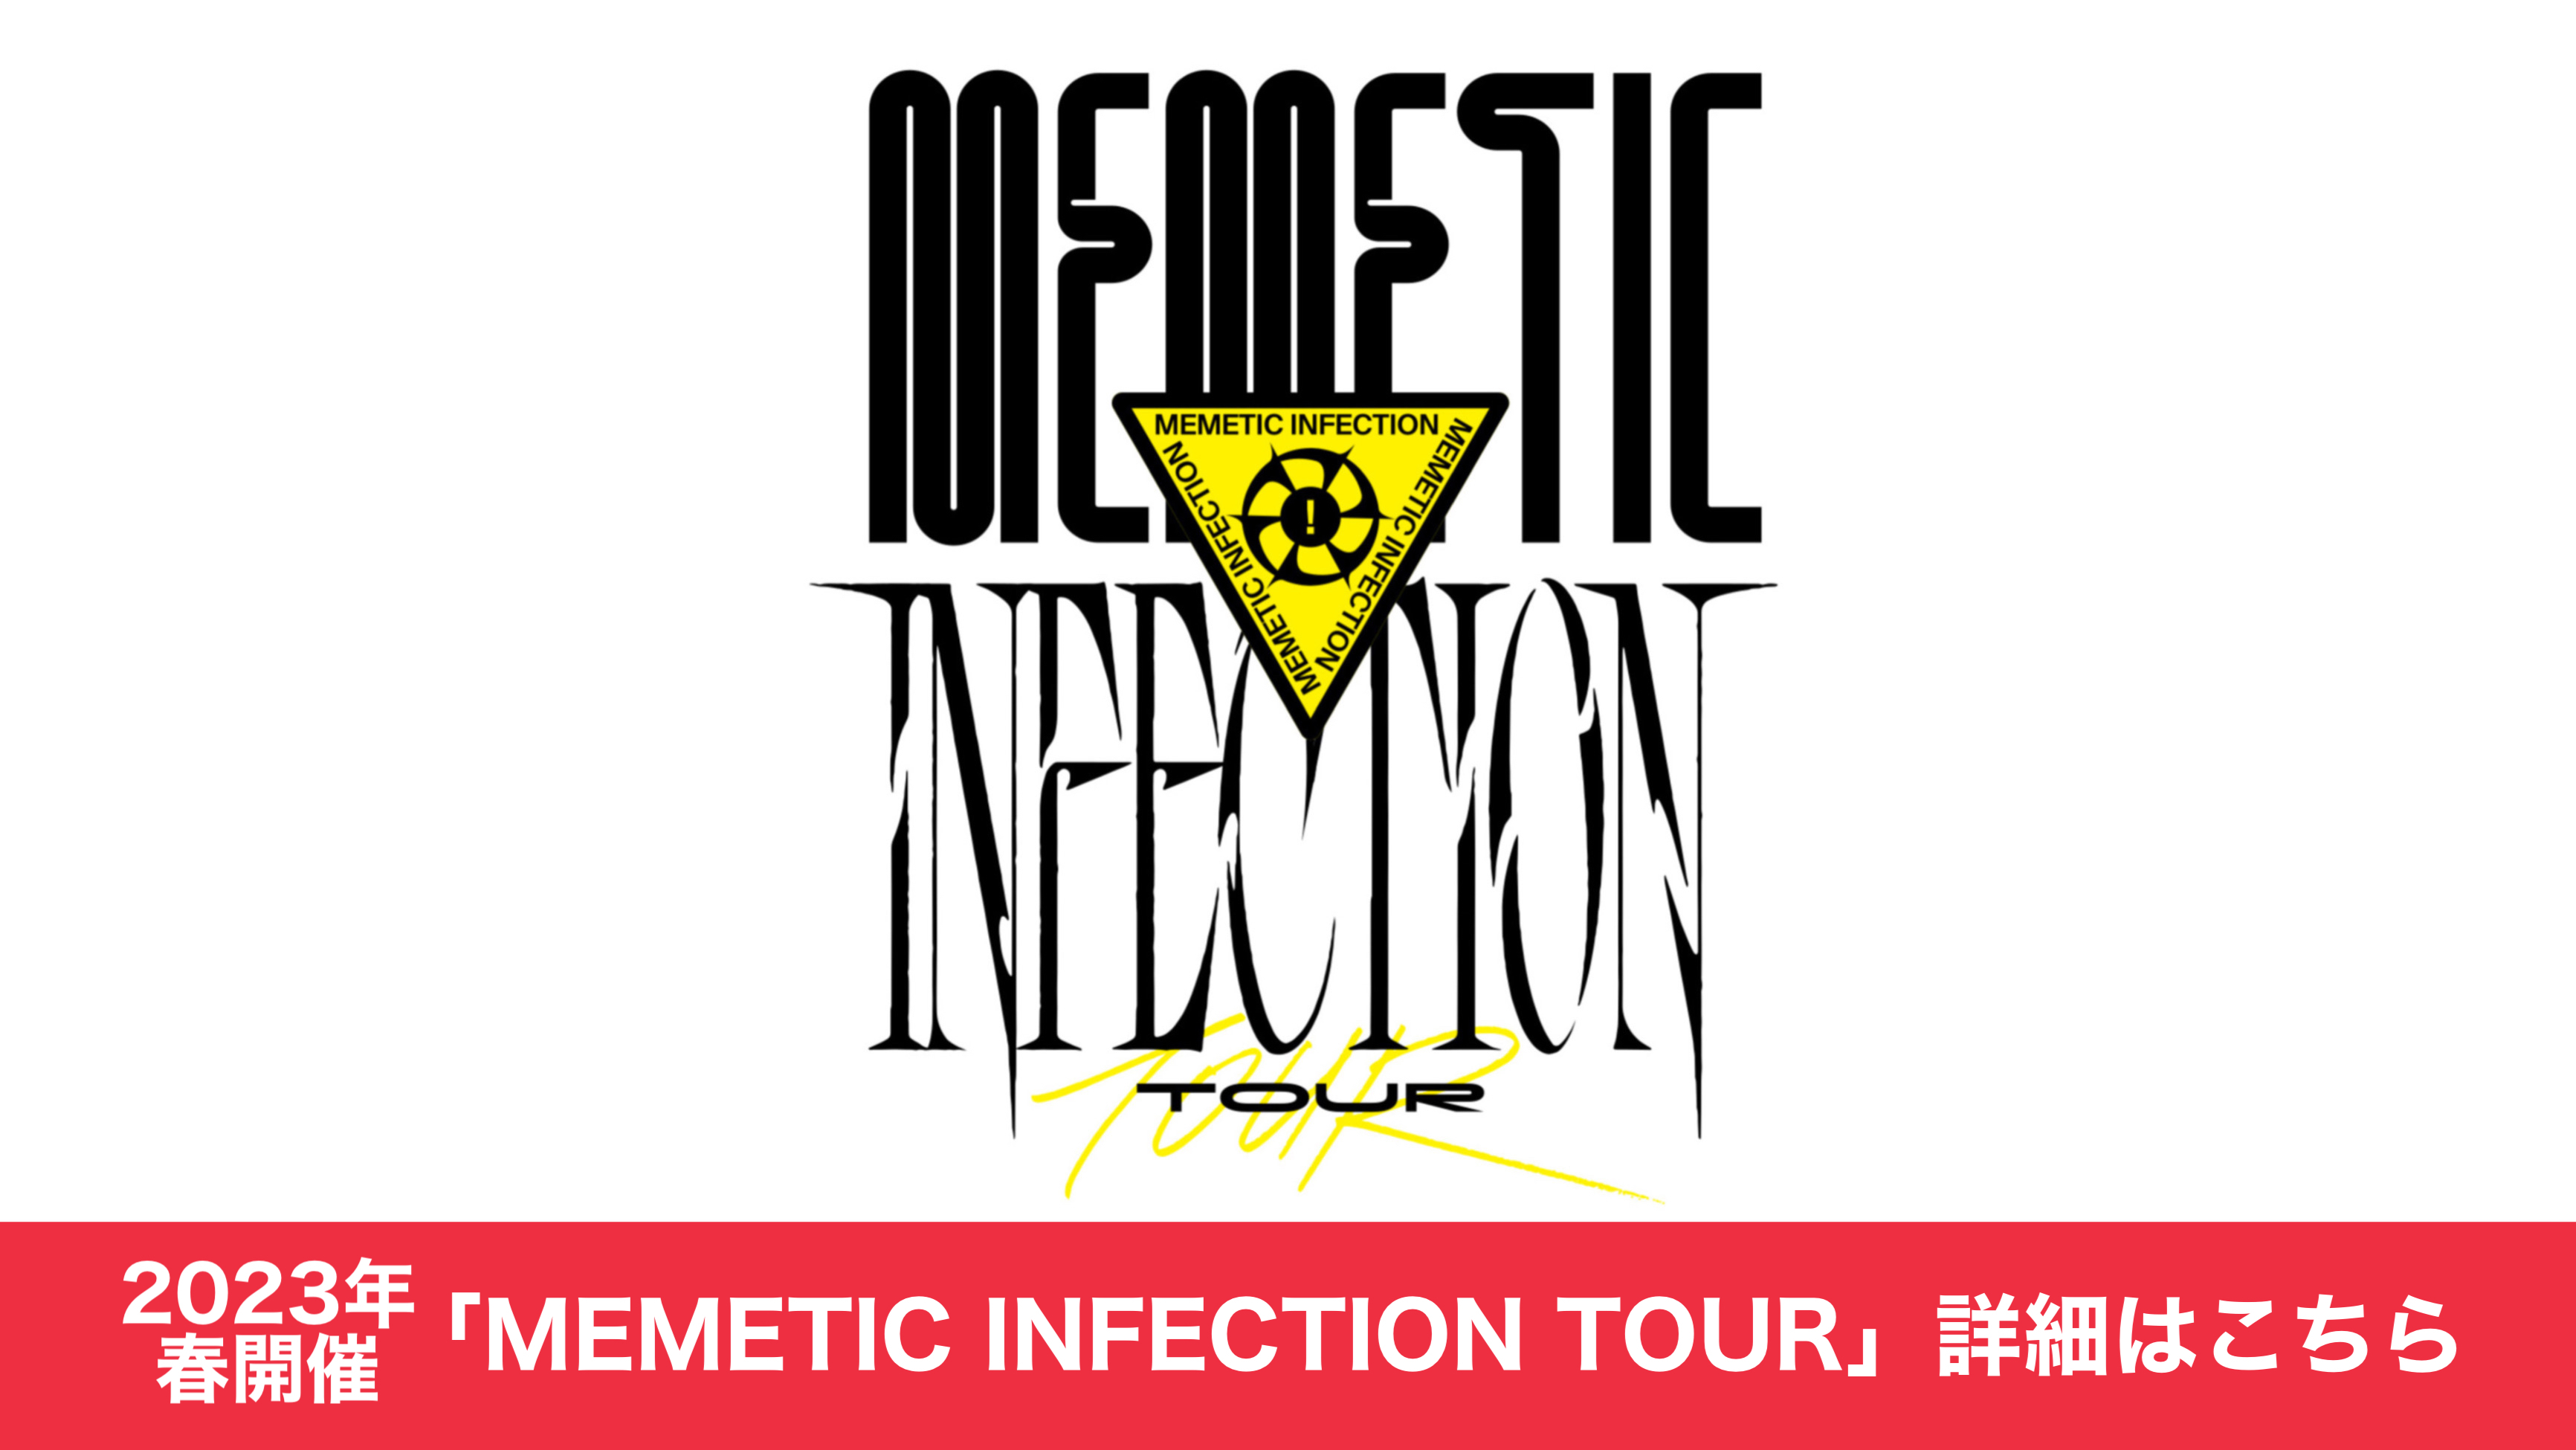 MEMETIC INFECTION TOUR